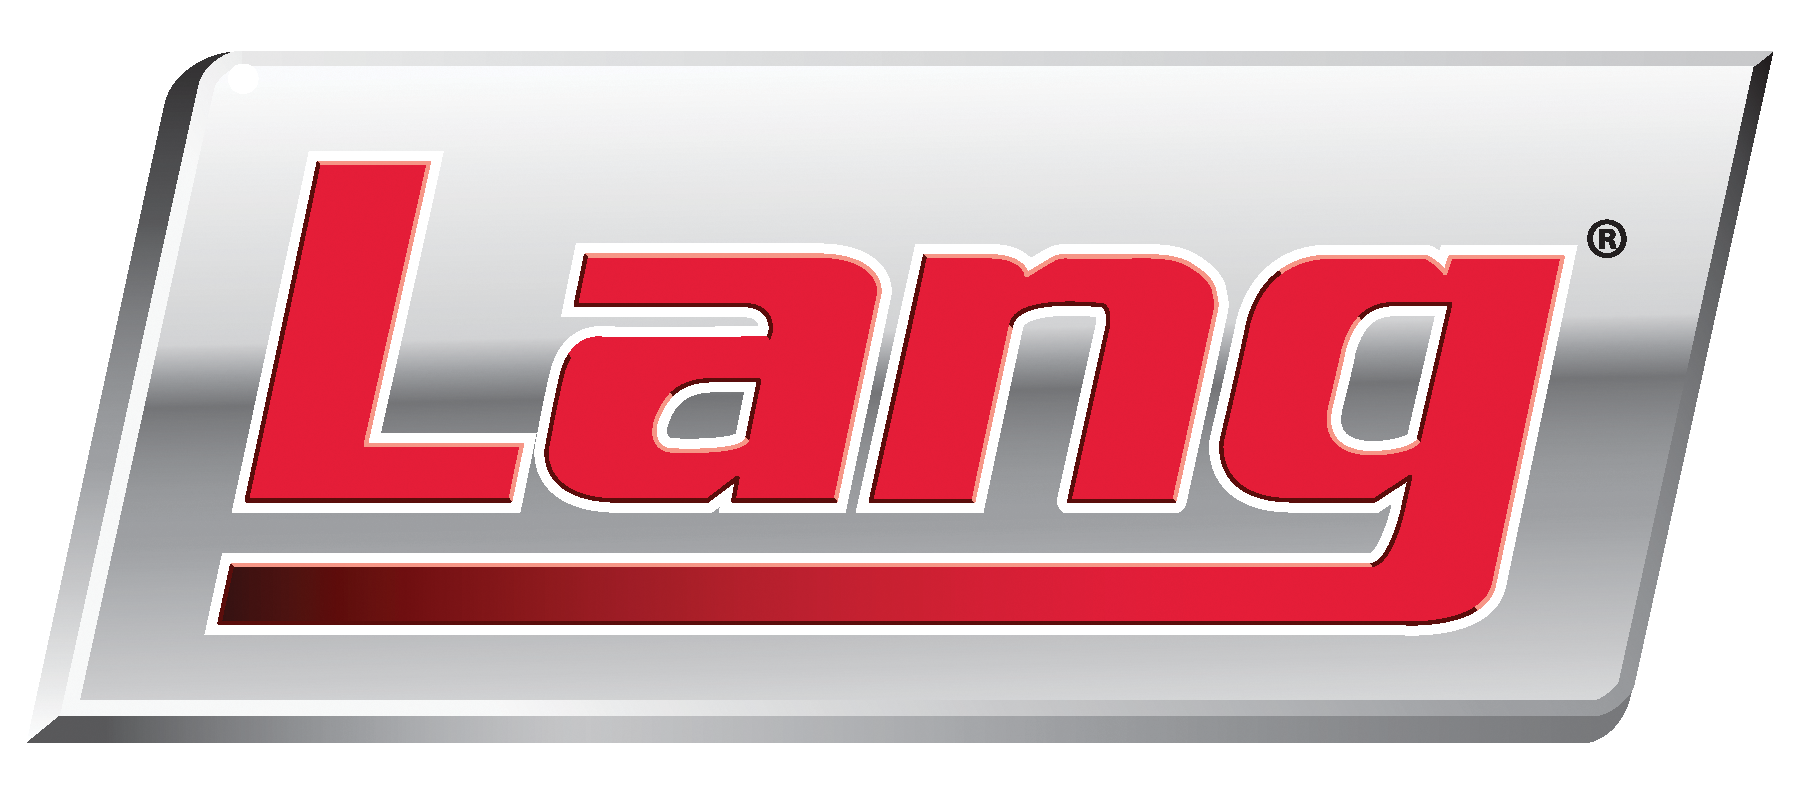 Lang_logo_2016 rgb